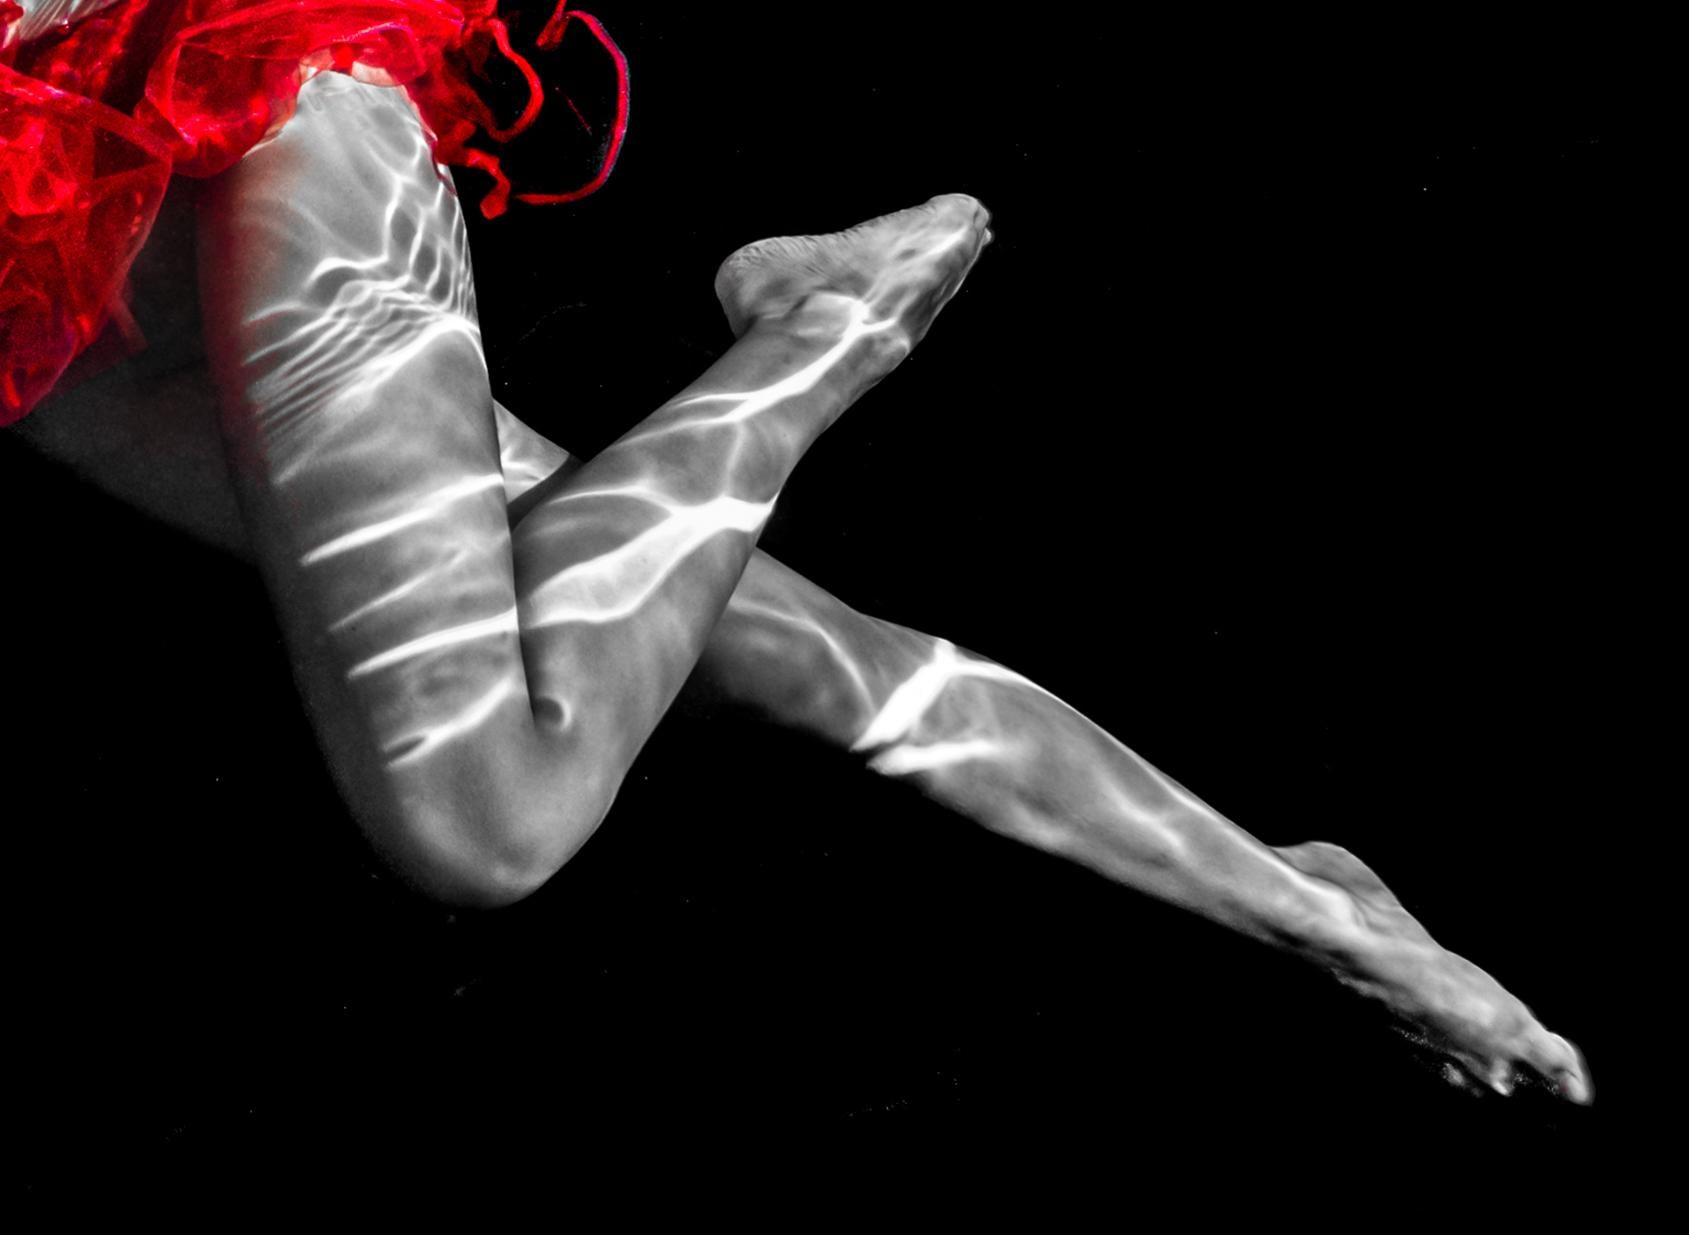 Eine Unterwasseraufnahme einer barbusigen Tänzerin im roten Tutu-Rock.

Vom Künstler signierter Original-Pigmentdruck in Galeriequalität auf Metallic-Papier.
Limitierte Auflage von 24 Stück
Das Kunstwerk ist mit einem Echtheitszertifikat versehen,